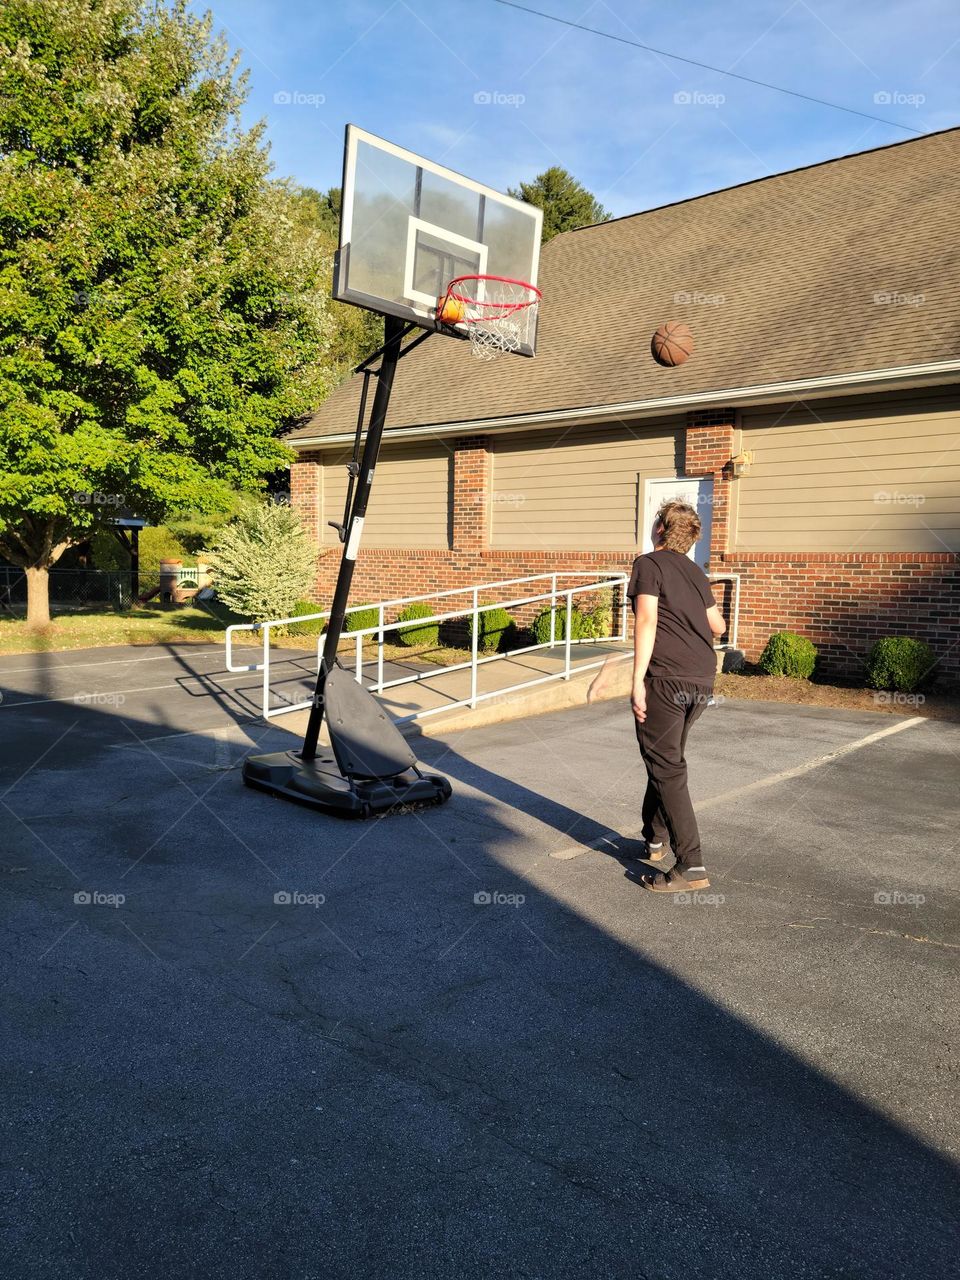 Grandson shooting hoops